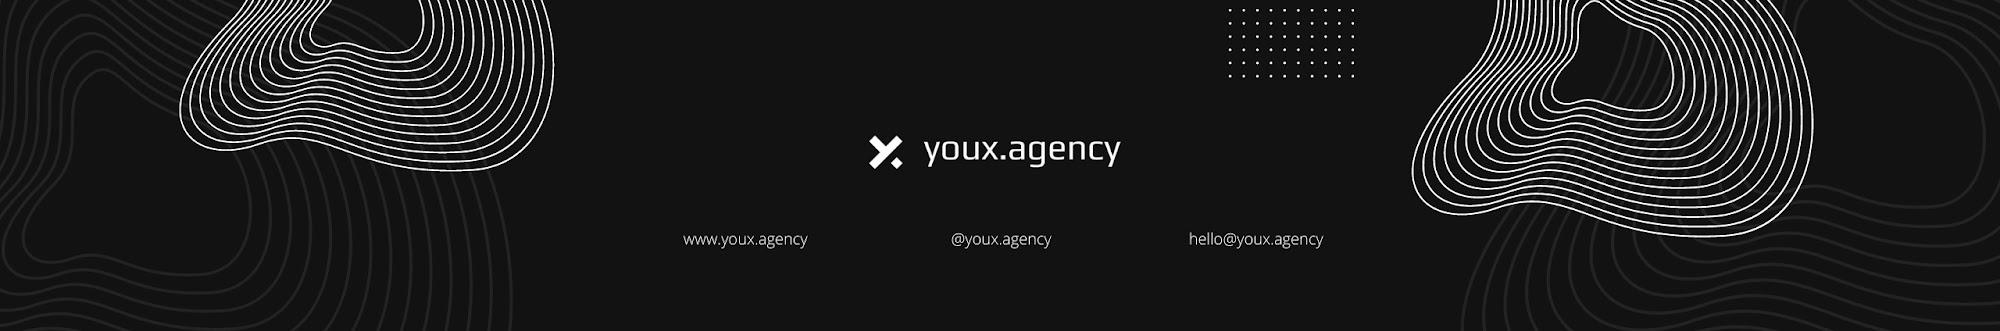 youx.agency 